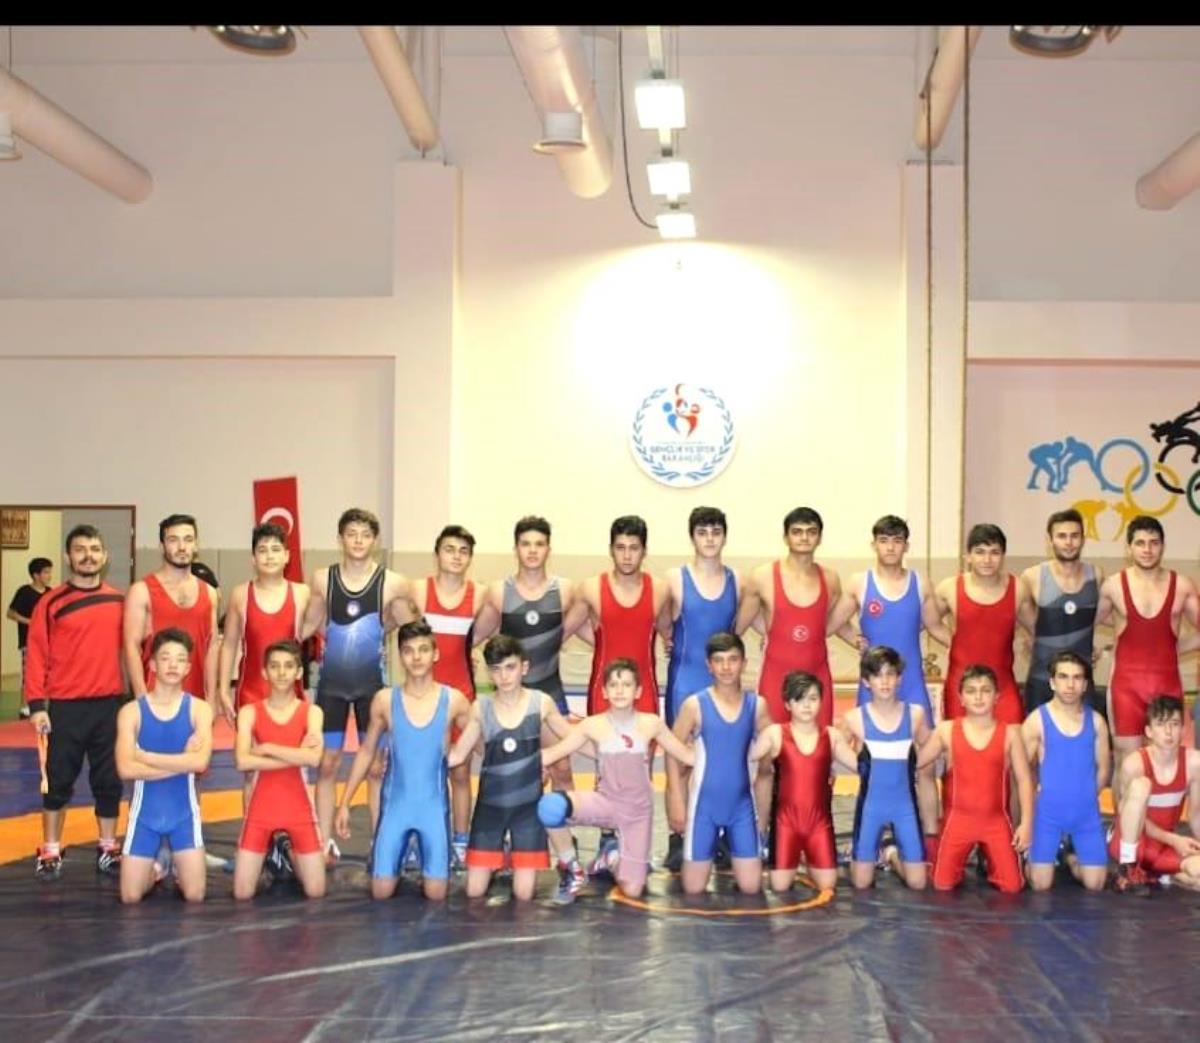 Eskişehir'den 10 sportmen madalya için güreşecek